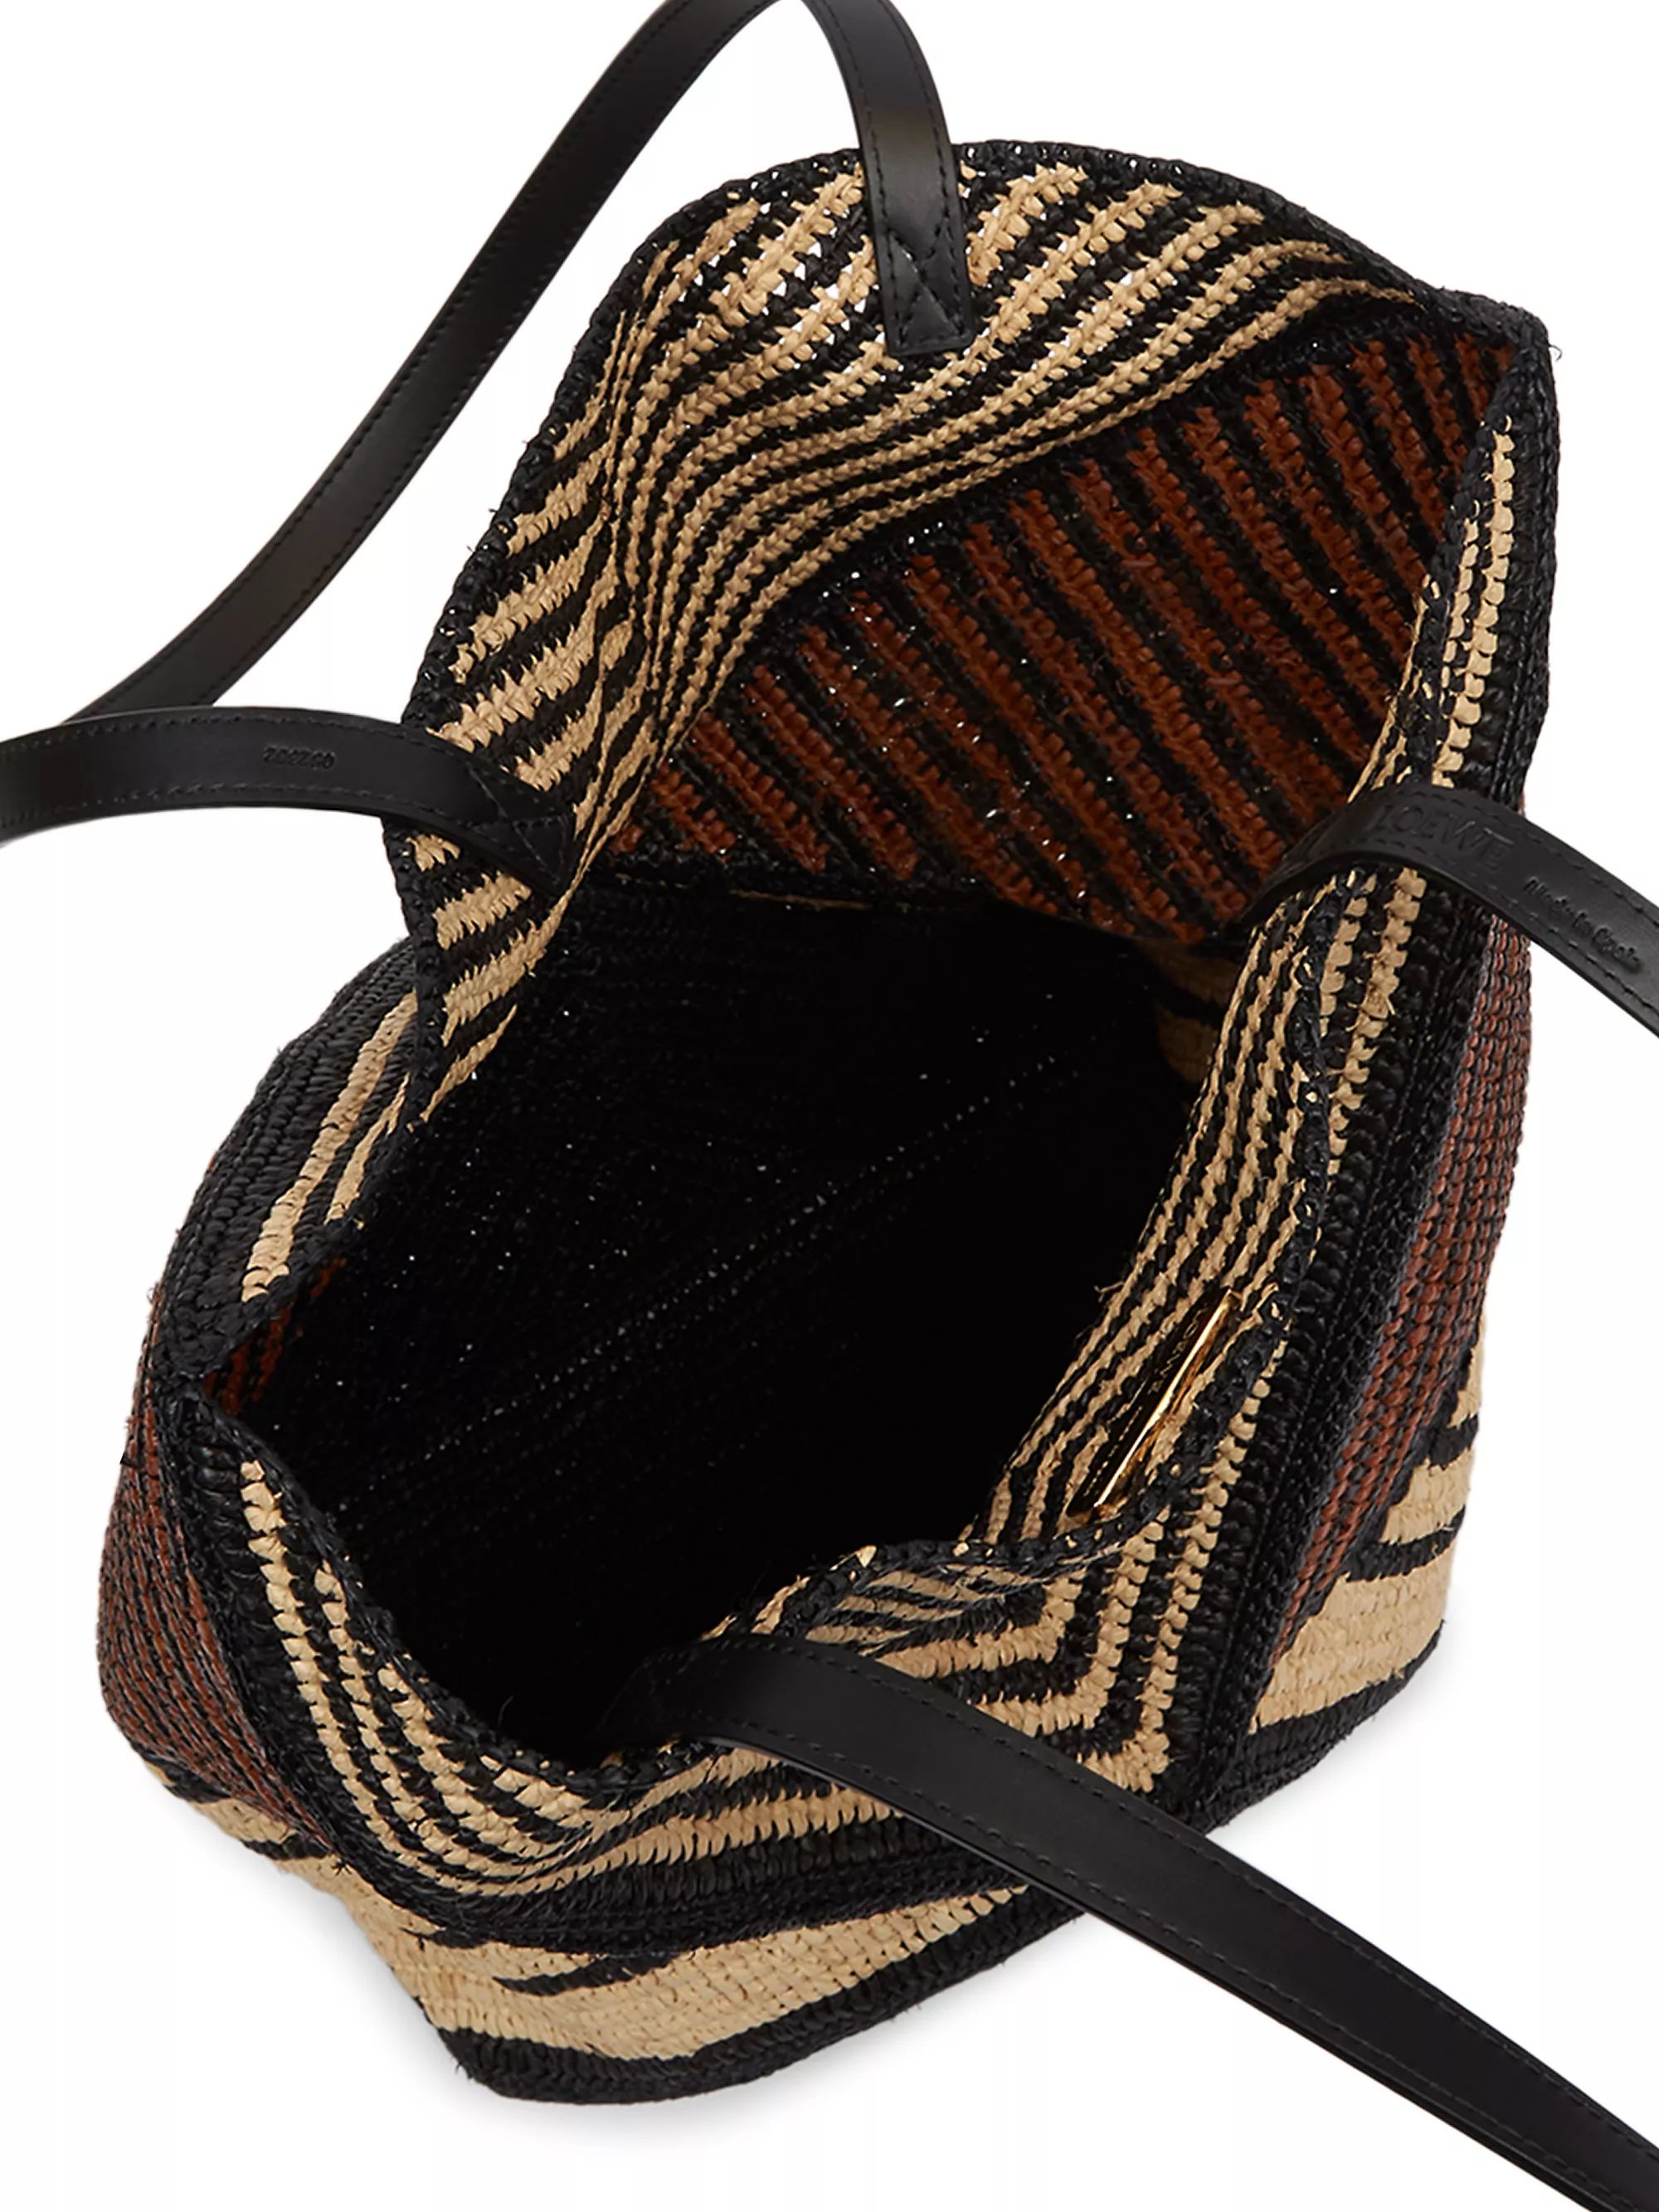 LOEWE x Paula's Ibiza 4FA Striped Raffia Foldable Tote Bag | Saks Fifth Avenue